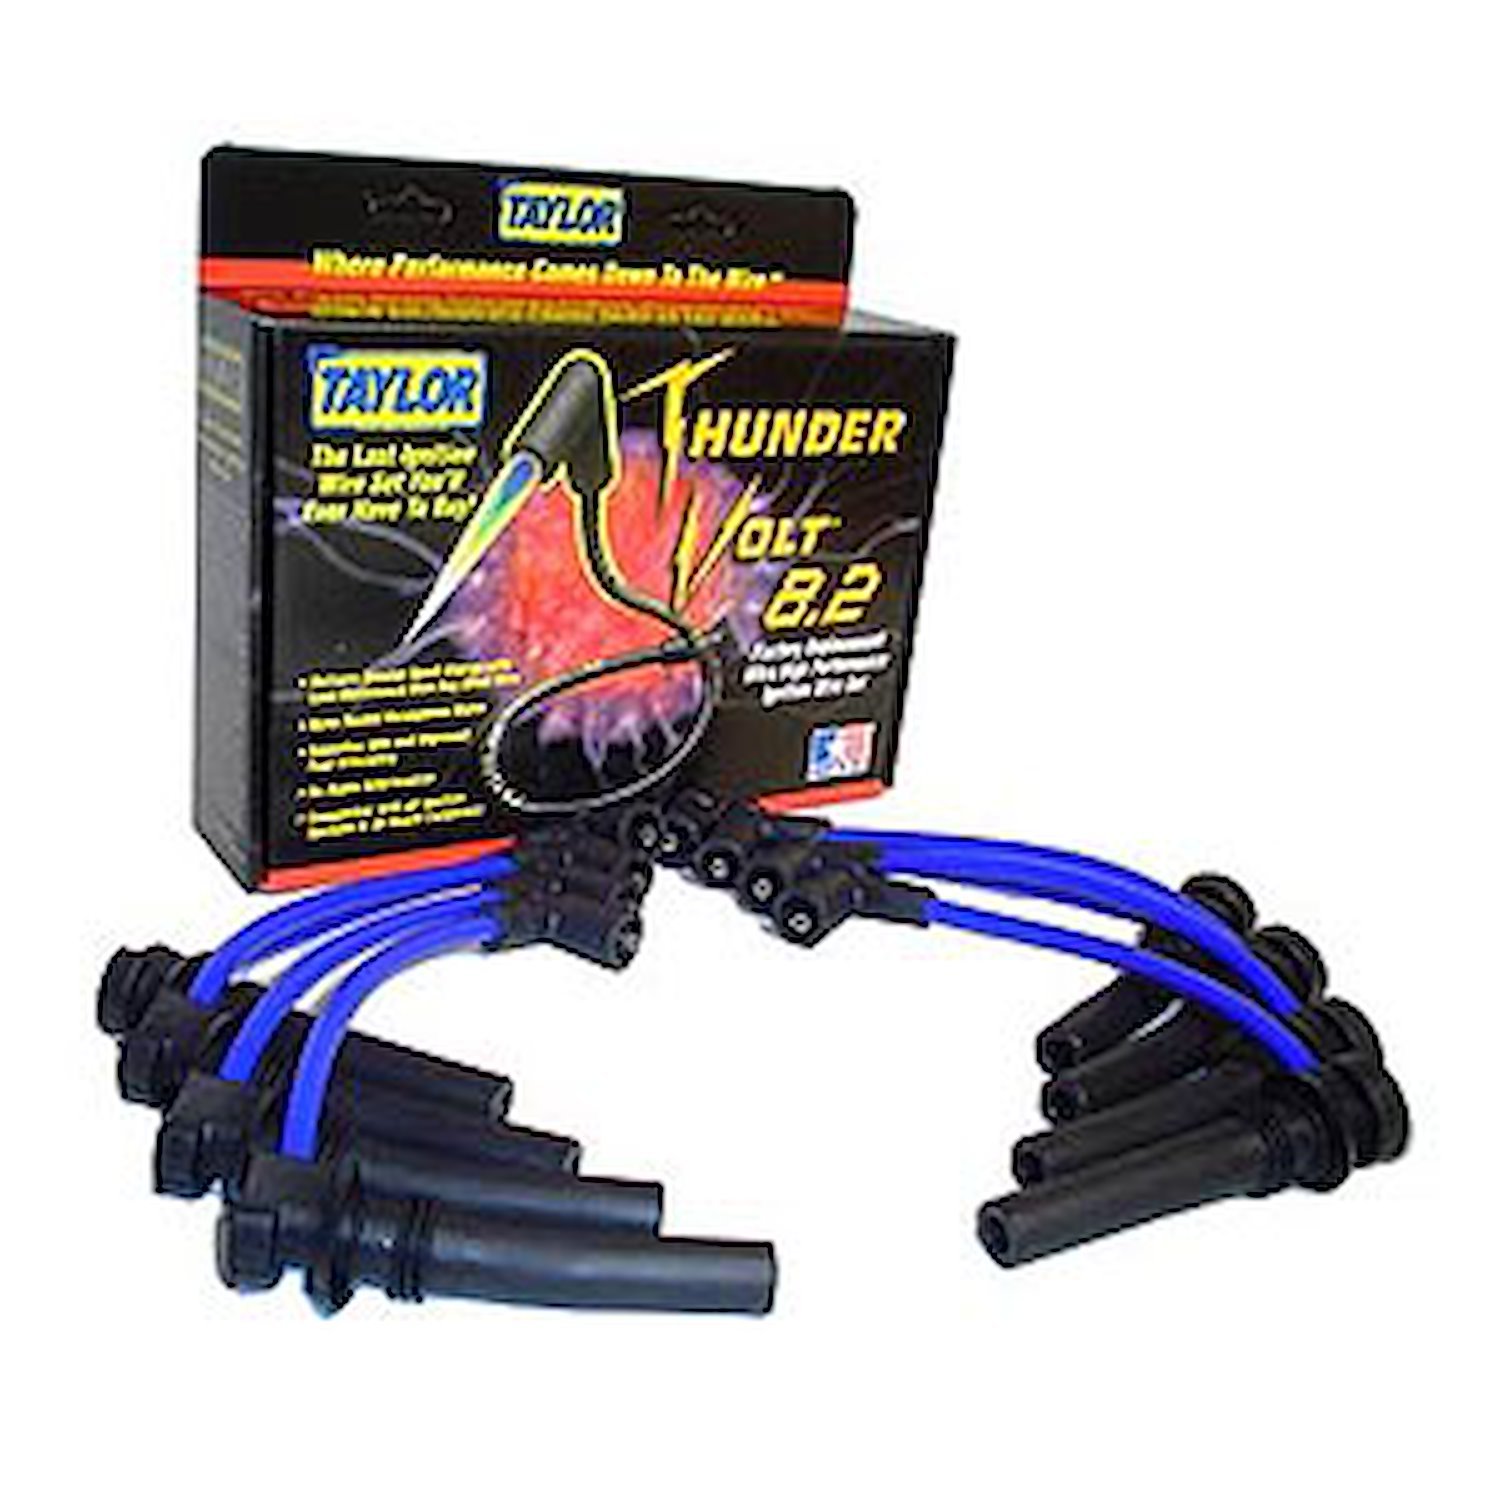 ThunderVolt 8.2mm Spark Plug Wires 2003-05 Dodge 5.7L Hemi